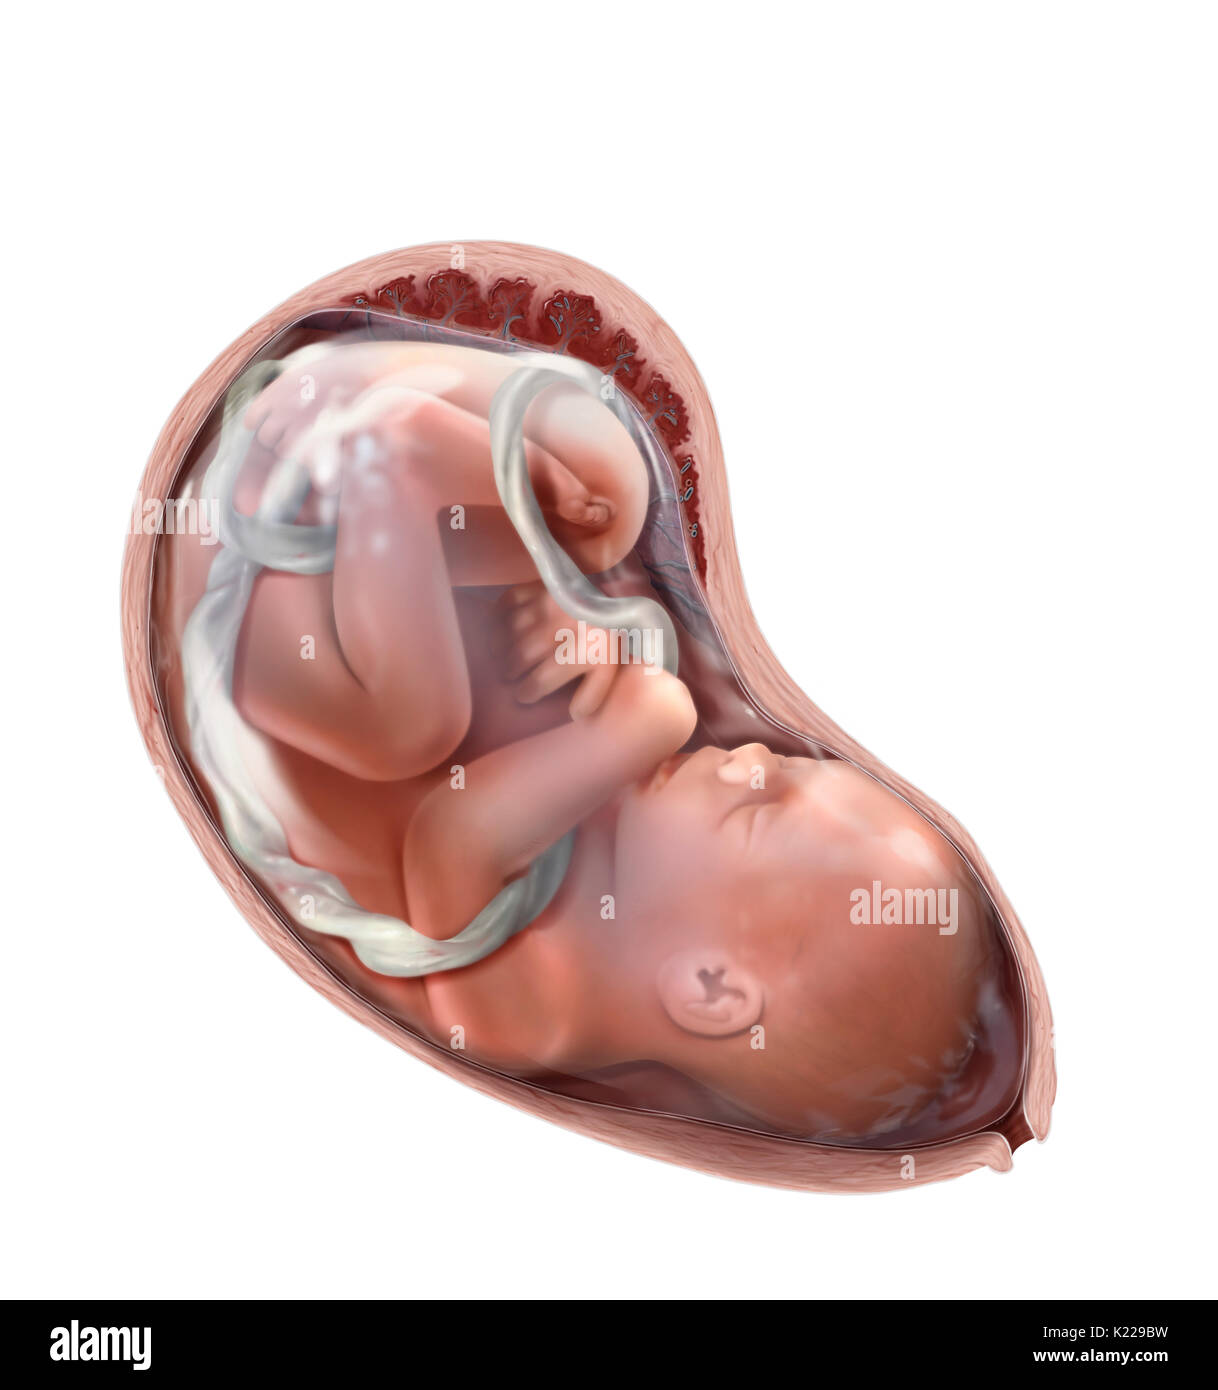 Entre la 8e semaine de la grossesse et de la naissance, l'être humain développe dans l'utérus est appelé un fœtus. Il connaît une croissance importante, en particulier au cours du deuxième trimestre, passant de 3 à près de 20 pouces. Il se redresse et ses caractéristiques deviennent plus fins alors que son poids augmente de 1⁄4 once à 7 livres. À partir de la 12e semaine, ses reins fonction et qu'il commence à uriner dans le liquide amniotique. Son système cardiovasculaire développe jusqu'au 3ème mois et son système digestif jusqu'au 7e mois. Banque D'Images